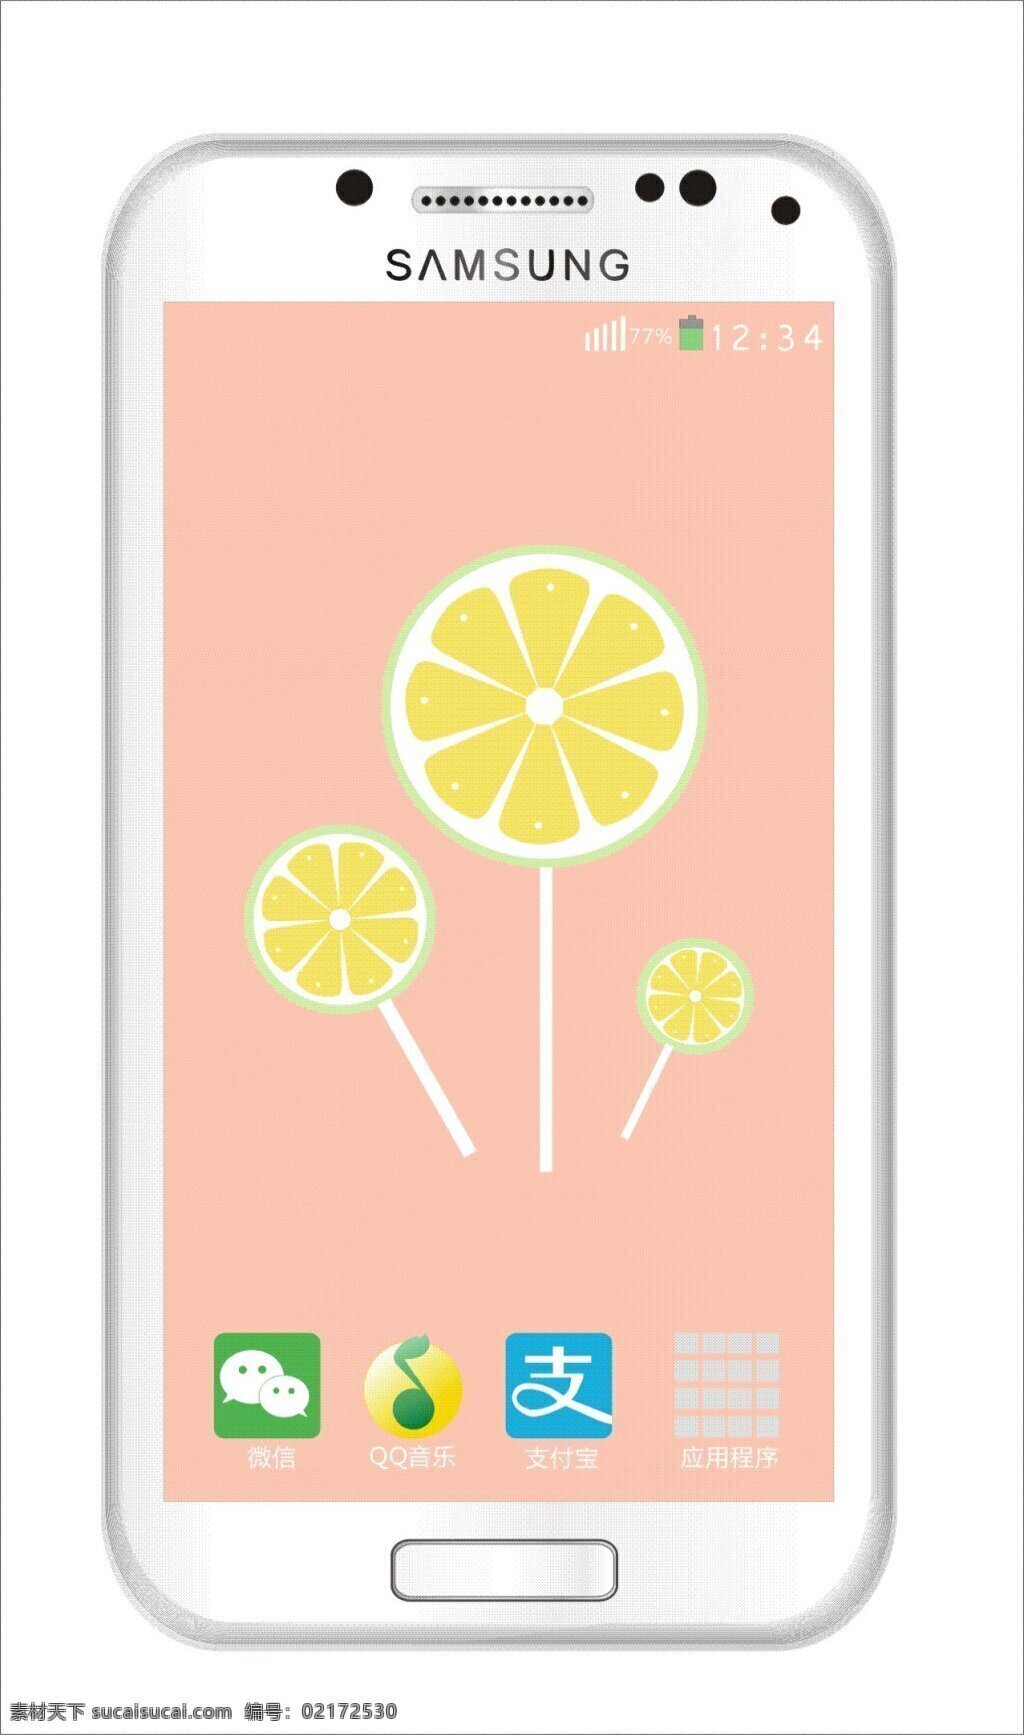 制图 三星手机 亲 制 广告 jz 作业 手机 三星 app 微信 支付宝 白色手机 s4 柠檬 棒棒糖